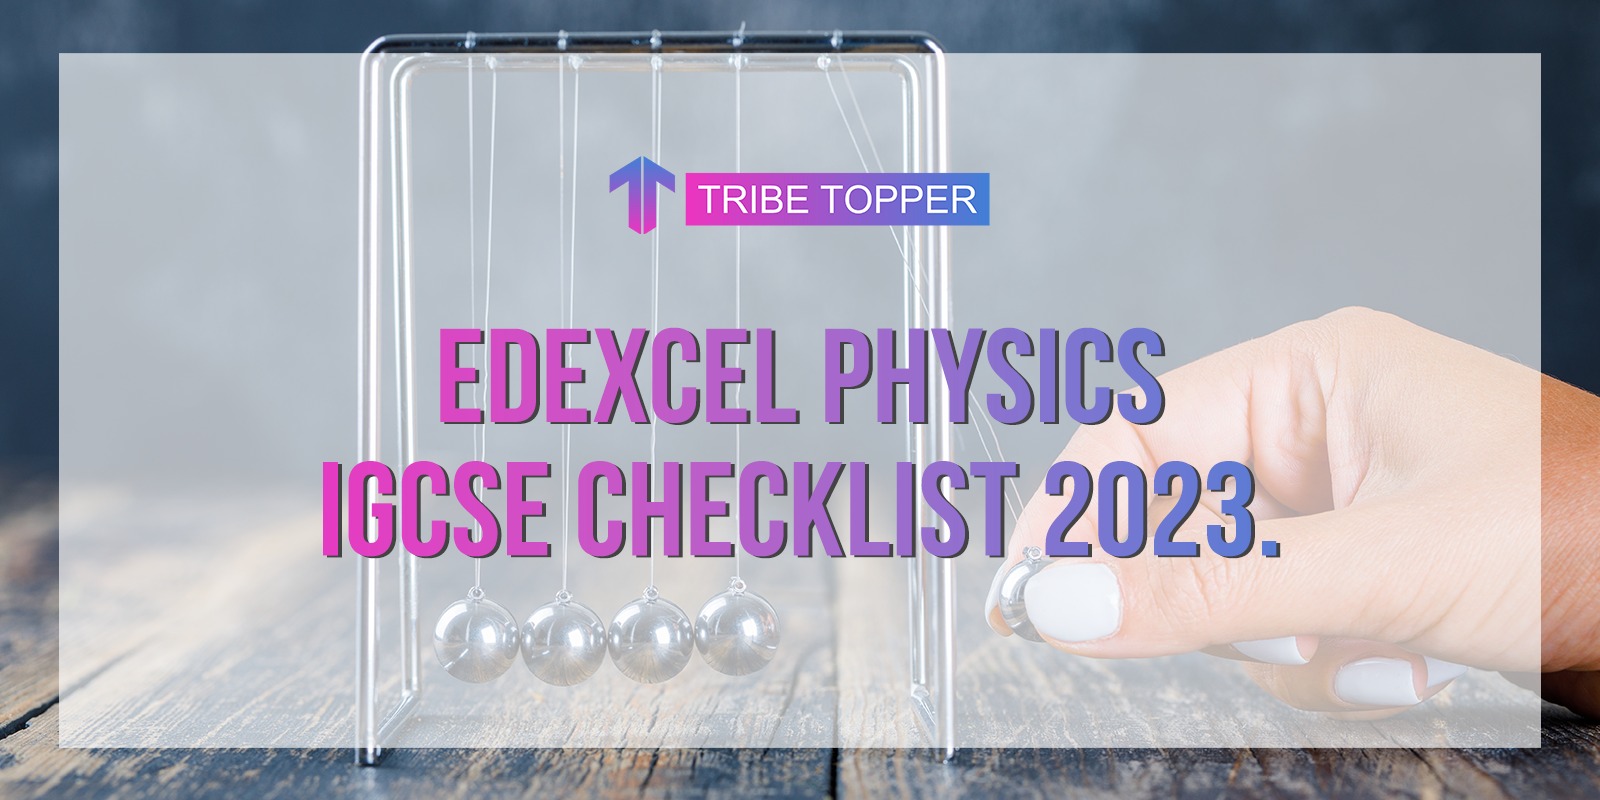 Edexcel Physics IGCSE checklist 2023